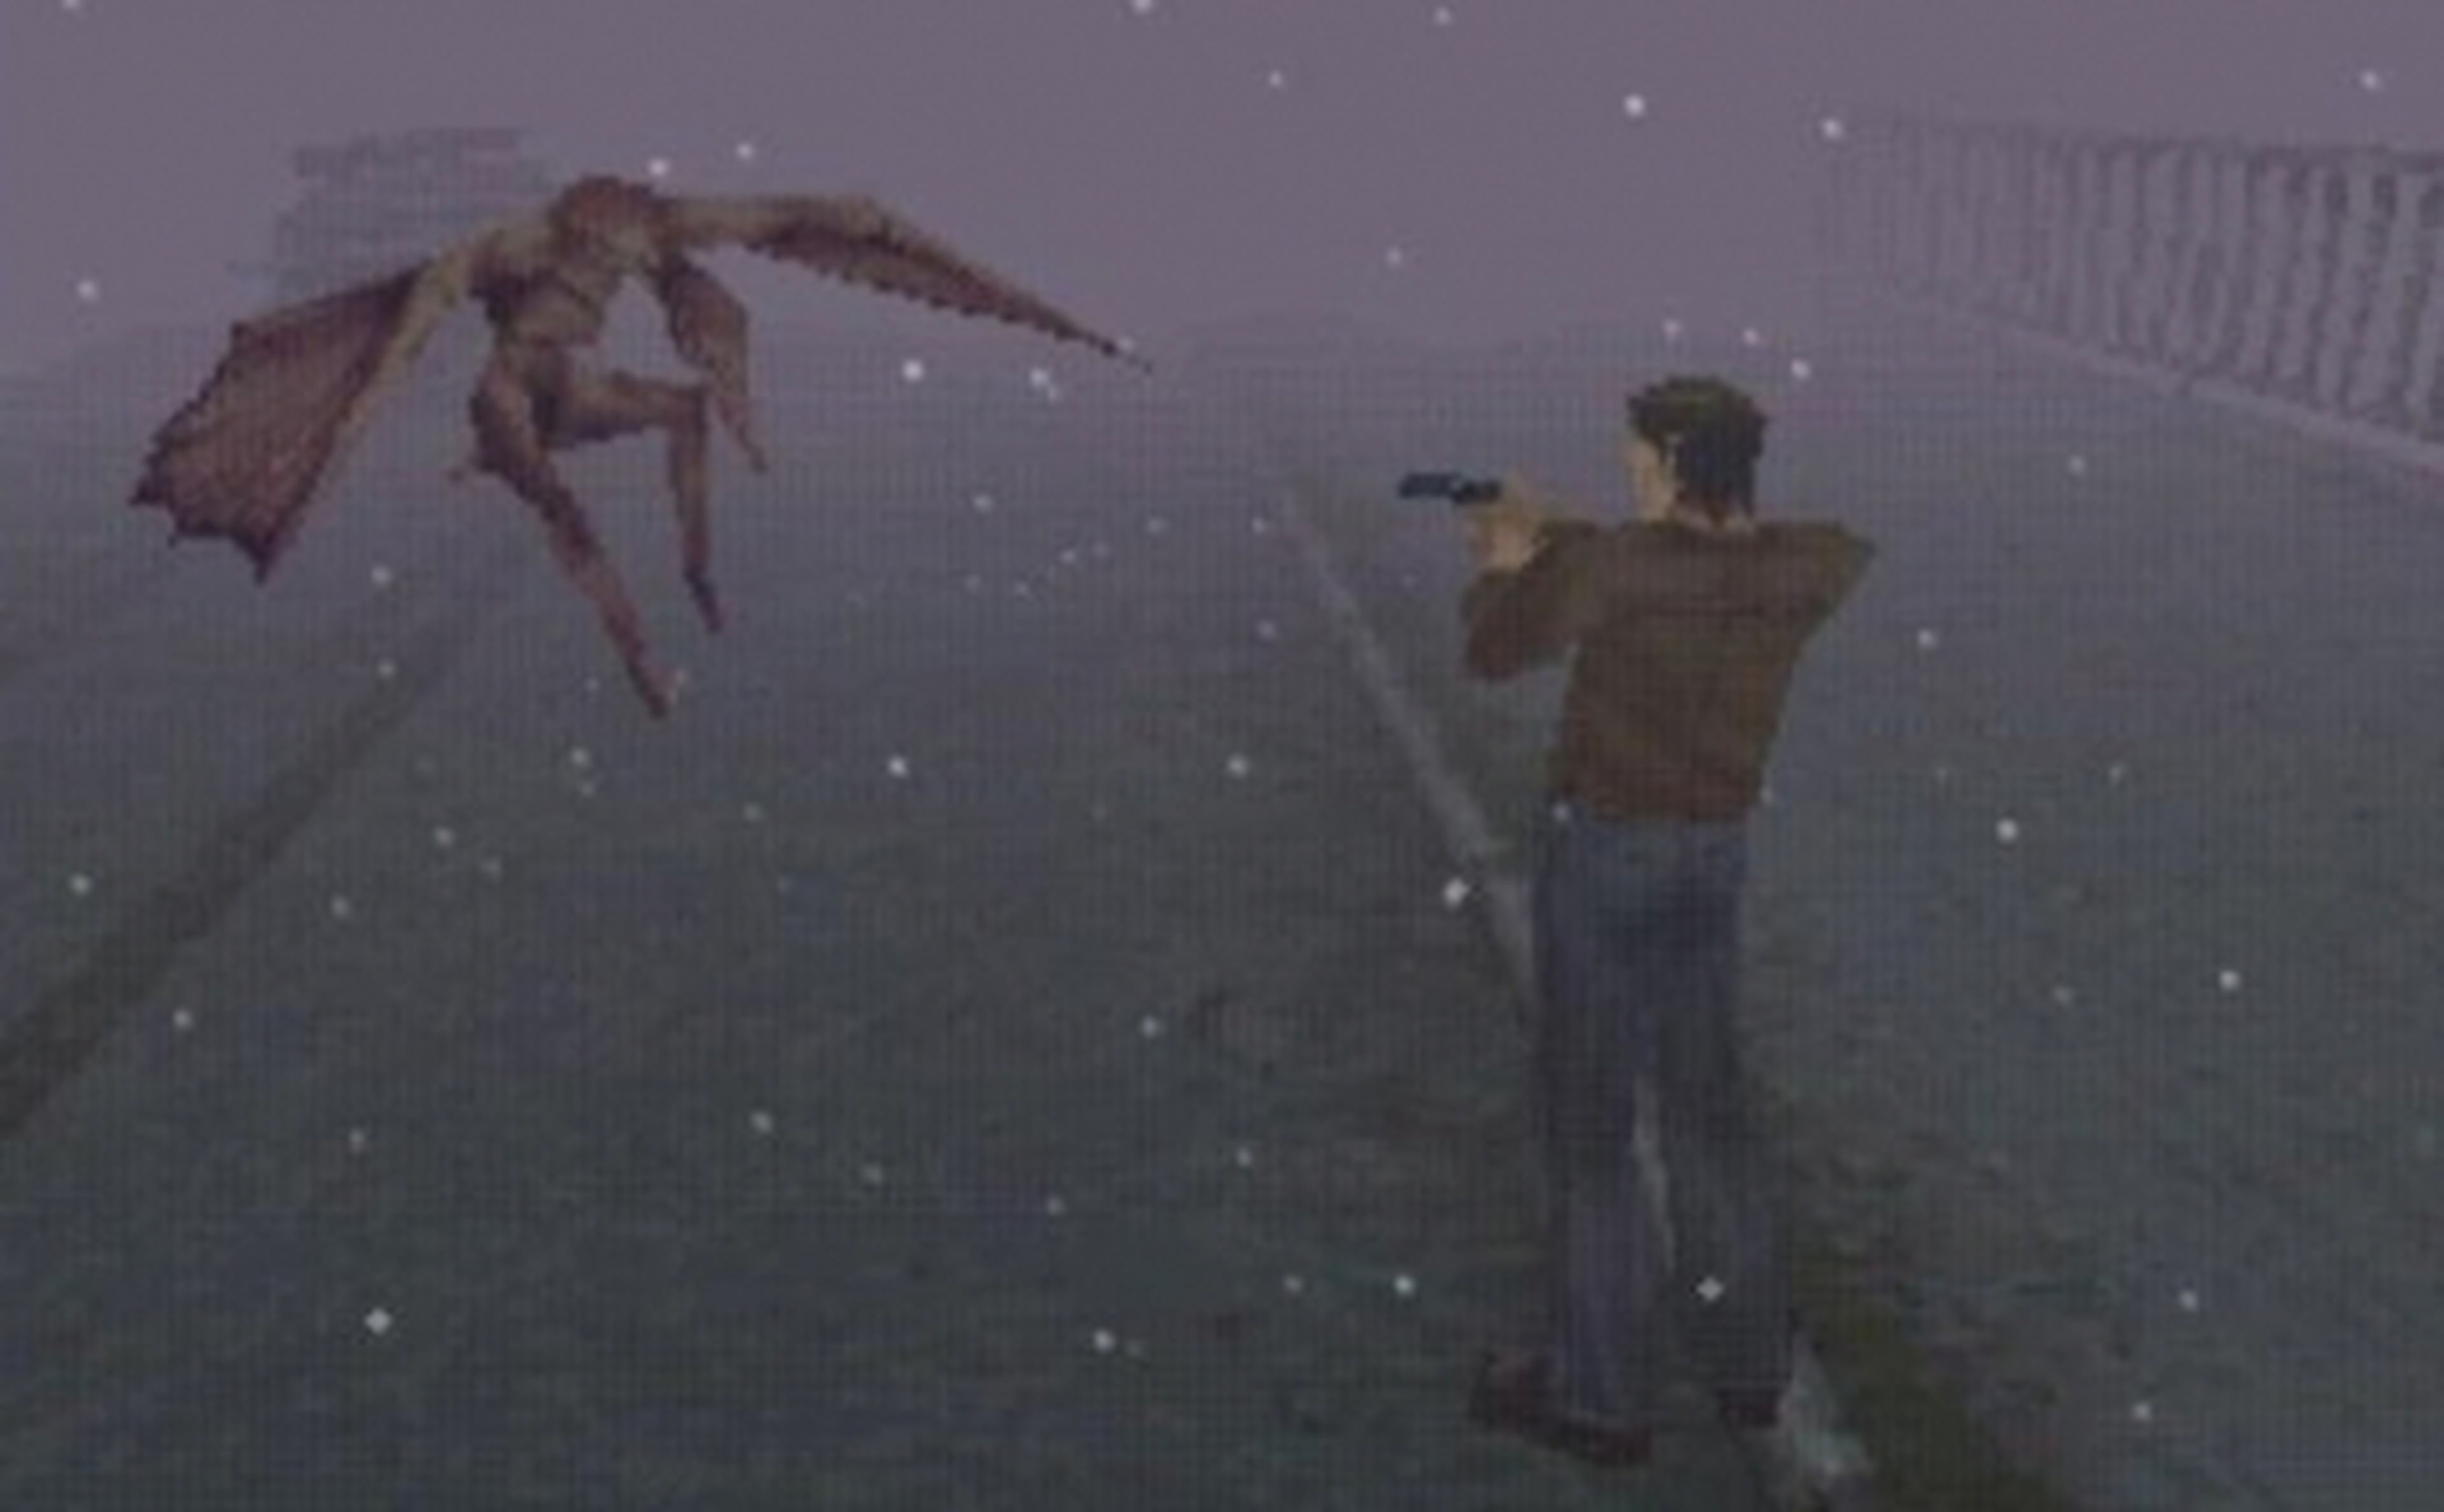 Silent Hill cumple hoy 15 años desde su lanzamiento